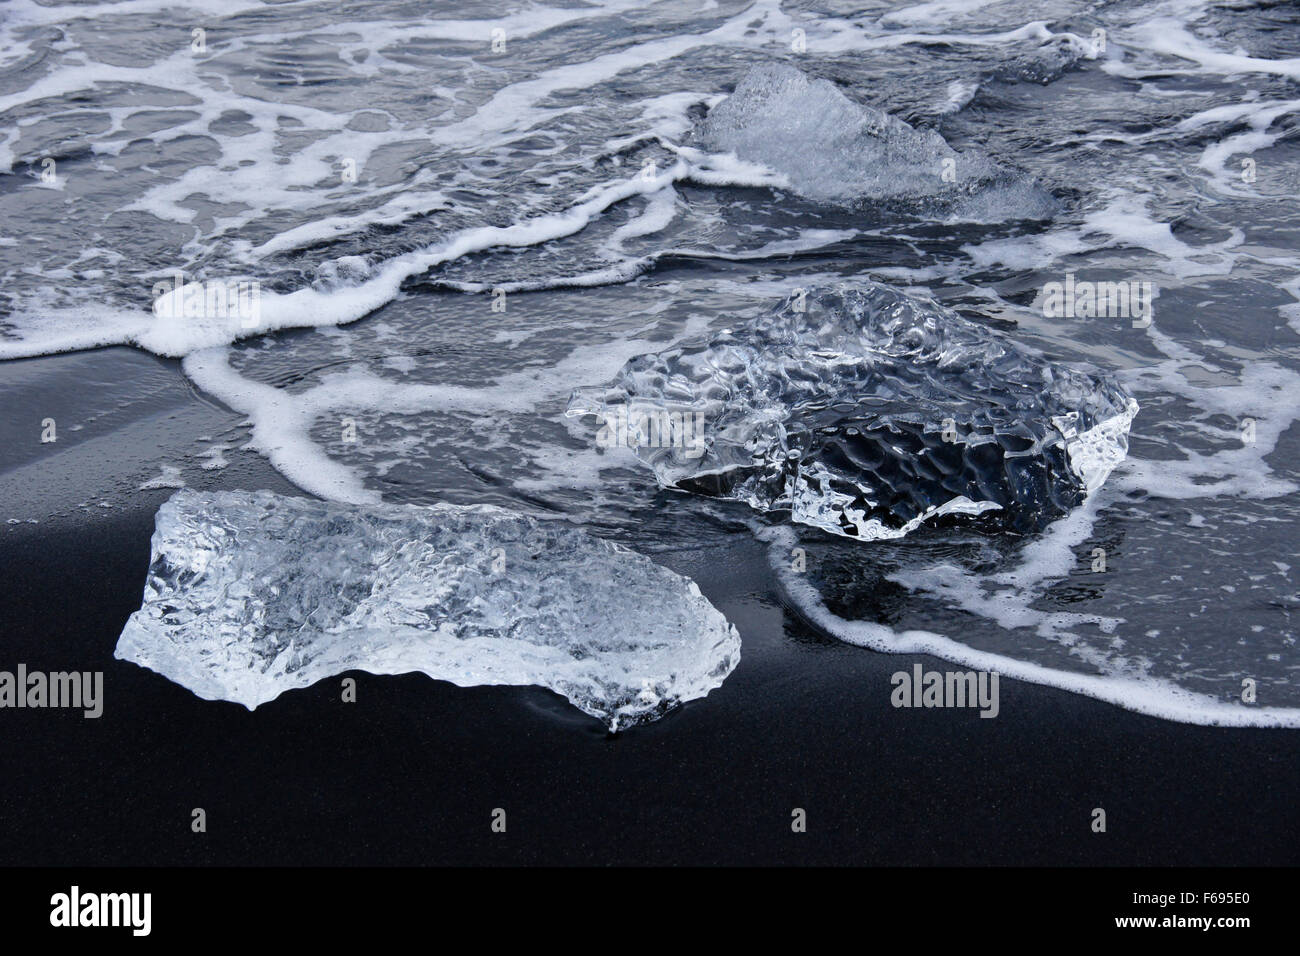 La glace échouée sur la plage de sable noir, le sud de l'Islande à Jokulsarlon Banque D'Images